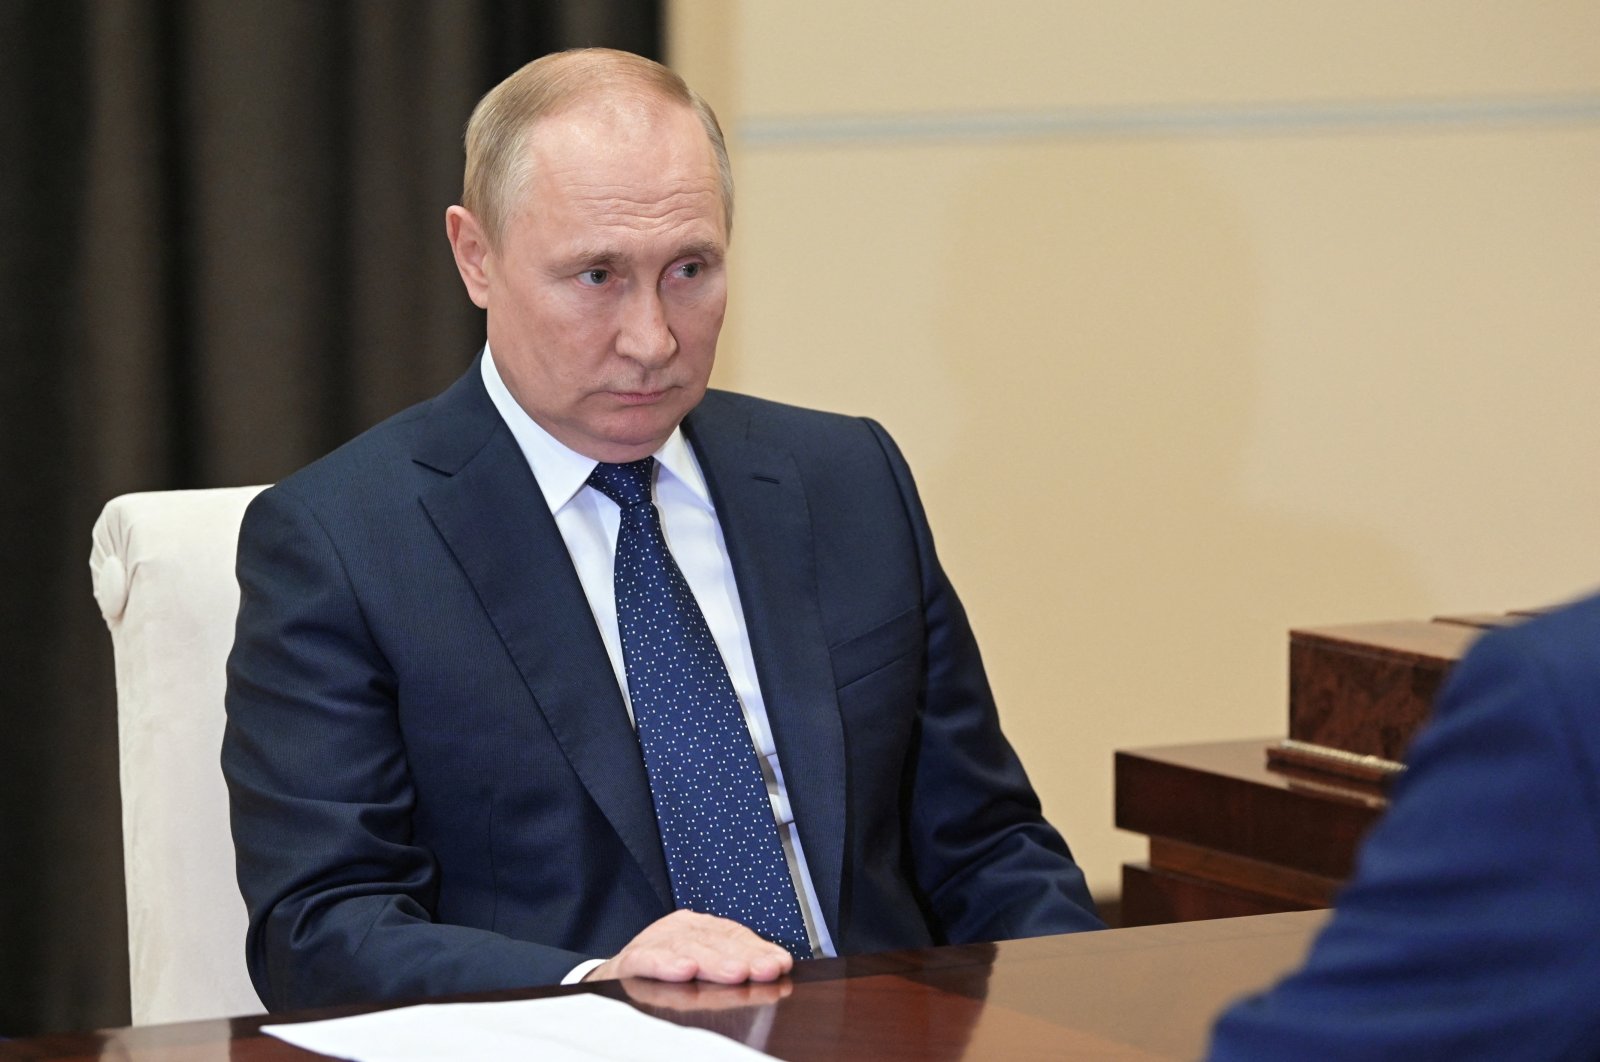 ‘Dia baik-baik saja’: Kremlin menyangkal rumor kesehatan tentang Putin